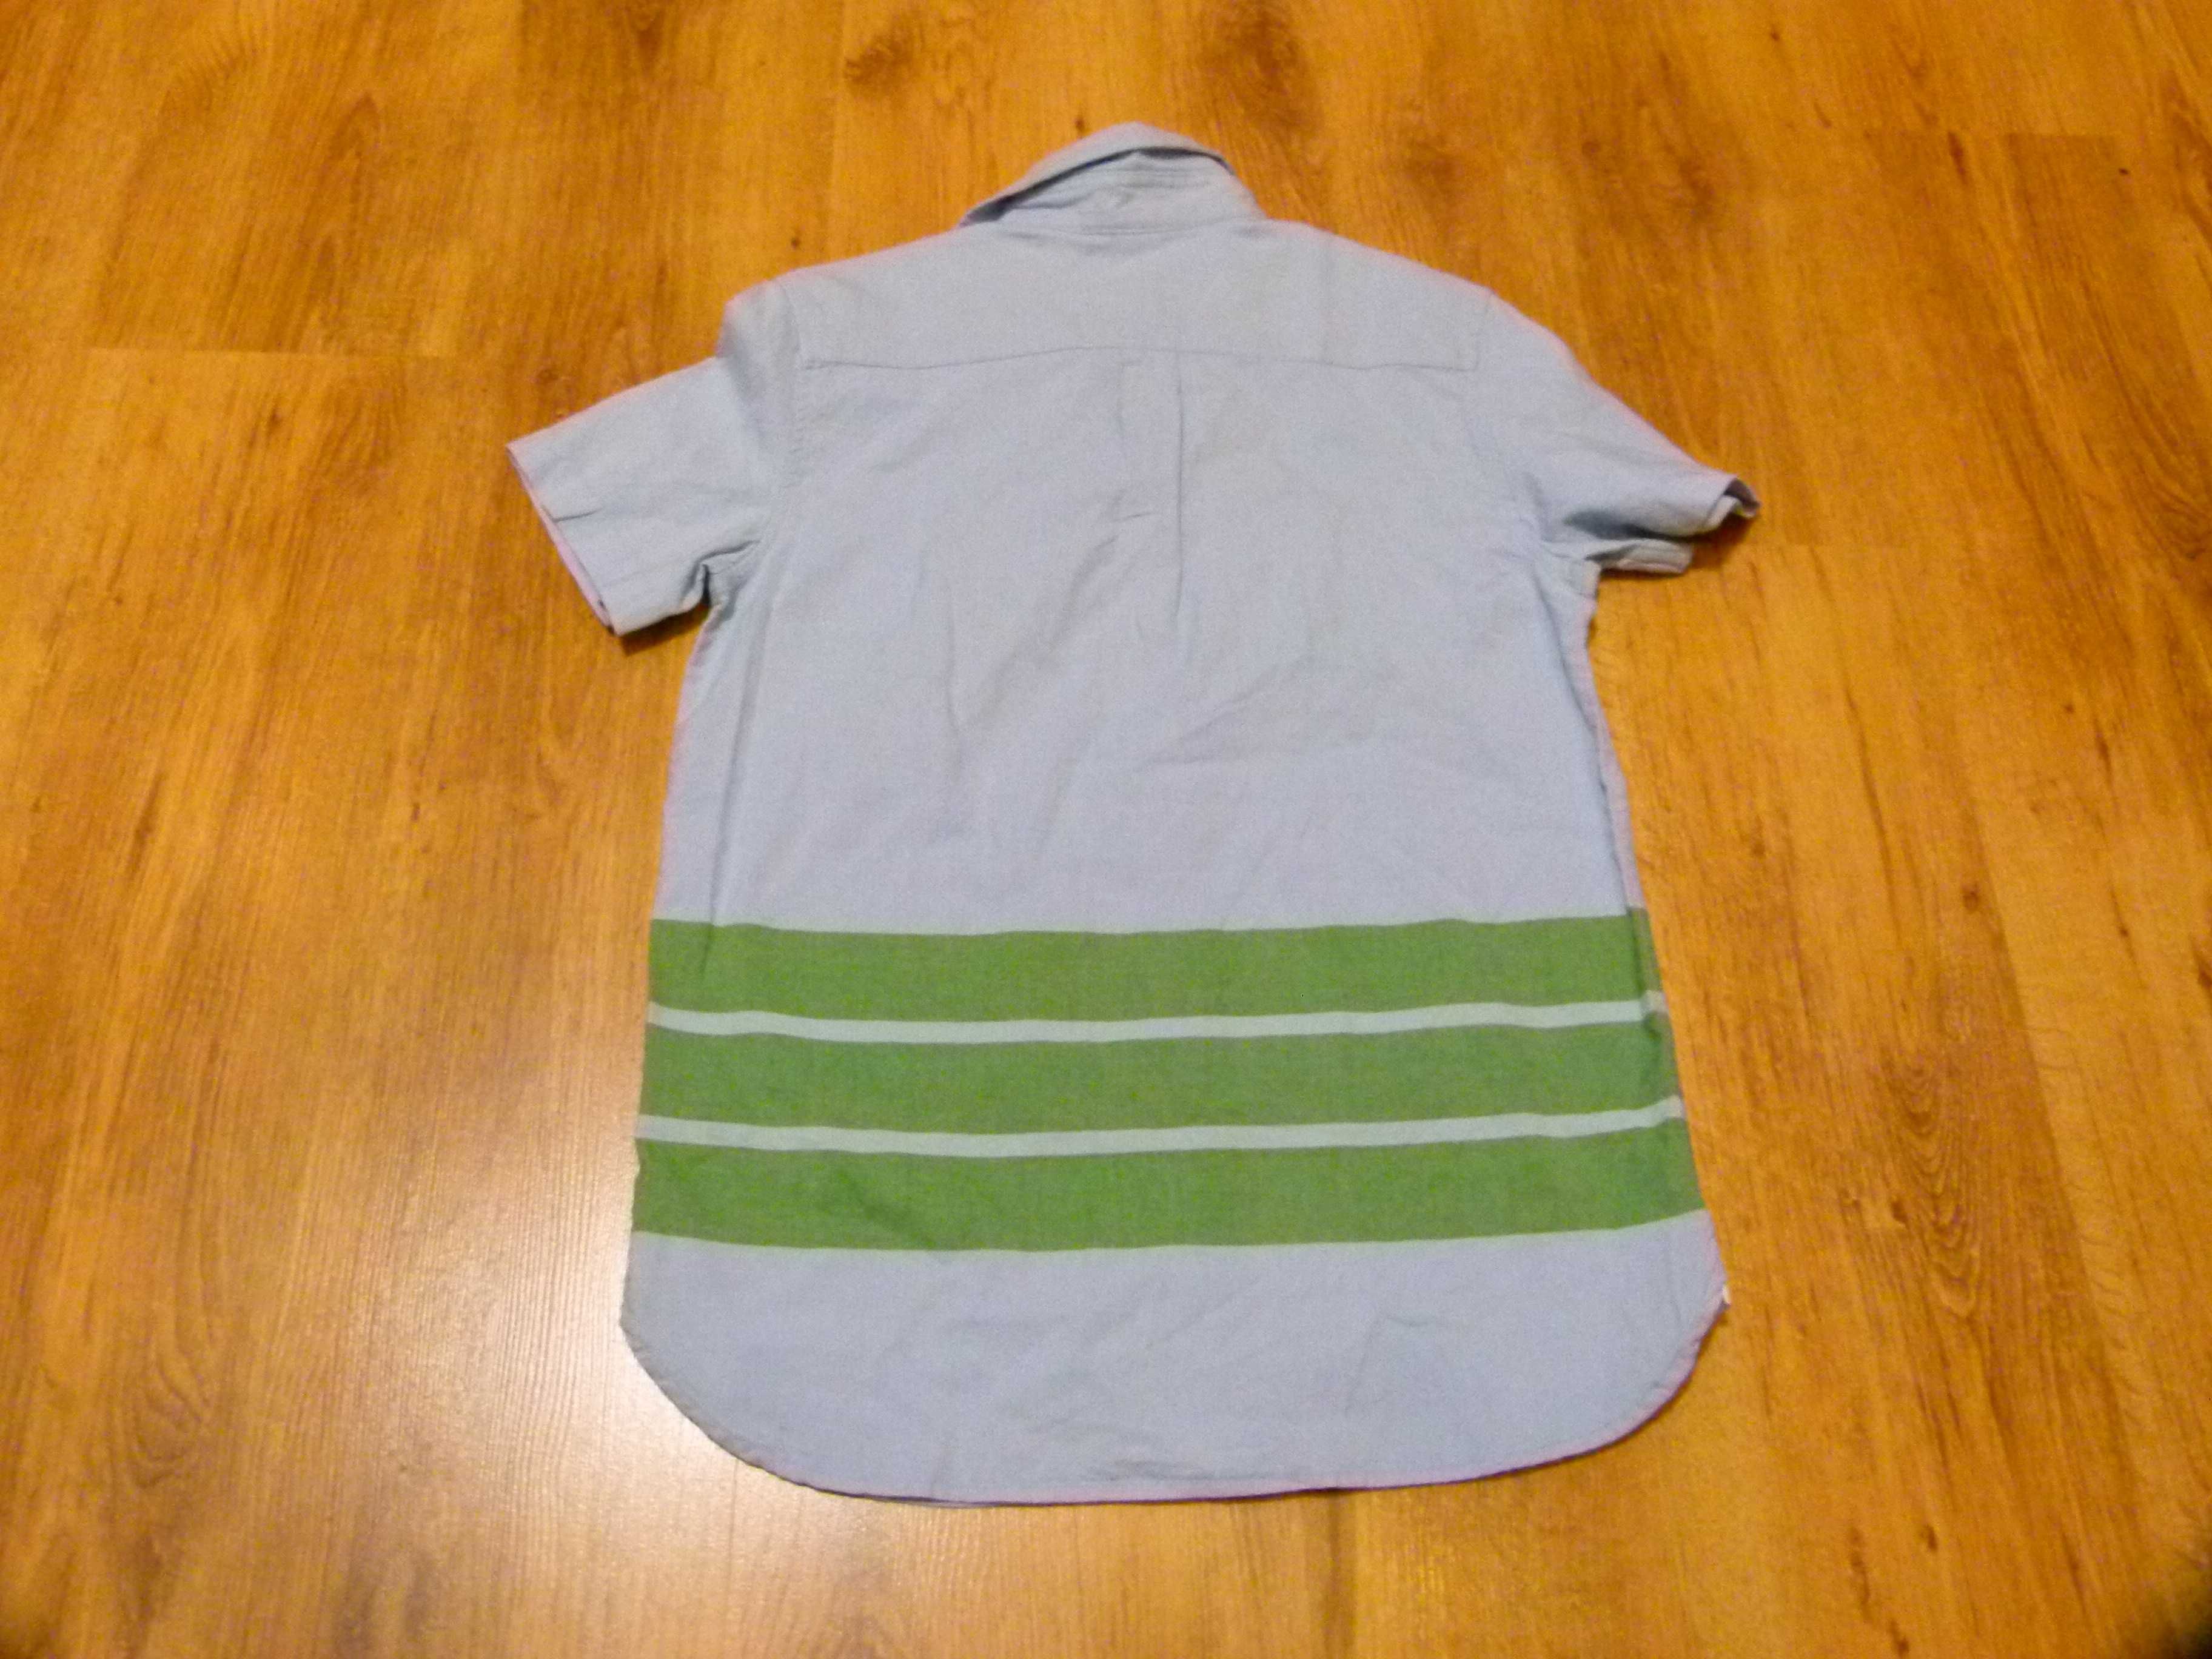 rozm 164 Tailor Vintage koszula niebieska zielone paski chłopięca